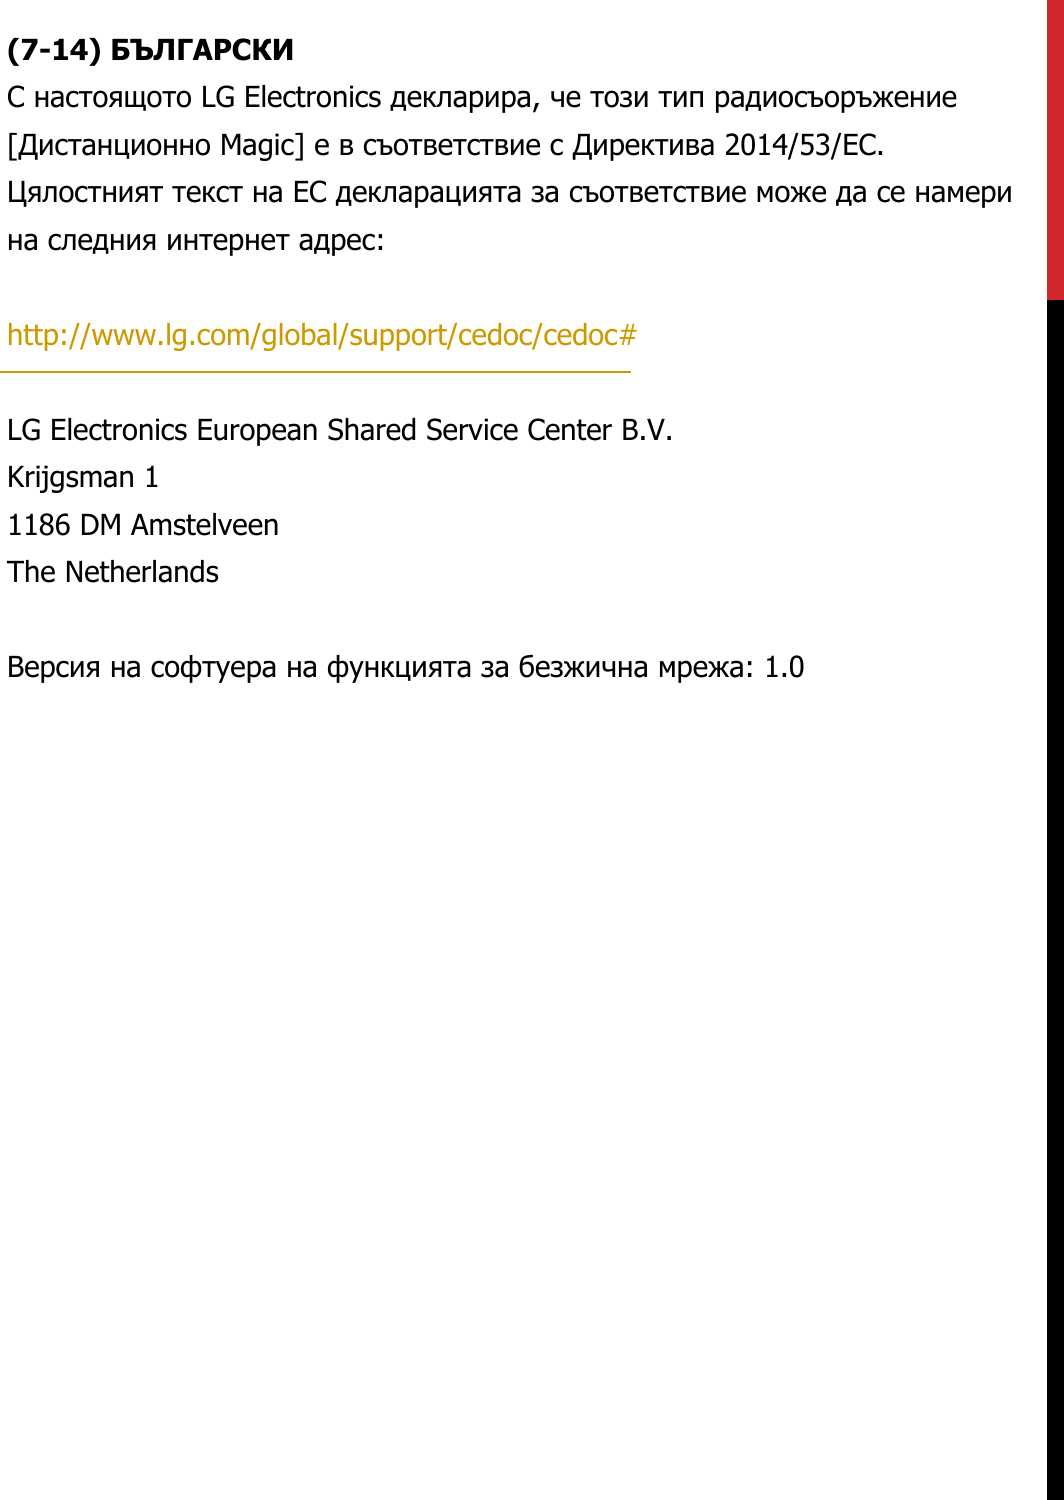 (7-14) БЪЛГАРСКИС настоящото LG Electronics декларира, че този тип радиосъоръжение  [Дистанционно Magic] е в съответствие с Директива 2014/53/ЕС.  Цялостният текст на ЕС декларацията за съответствие може да се намери  на следния интернет адрес:   http://www.lg.com/global/support/cedoc/cedoc#   LG Electronics European Shared Service Center B.V.  Krijgsman 1  1186 DM Amstelveen  The Netherlands   Версия на софтуера на функцията за безжична мрежа: 1.0